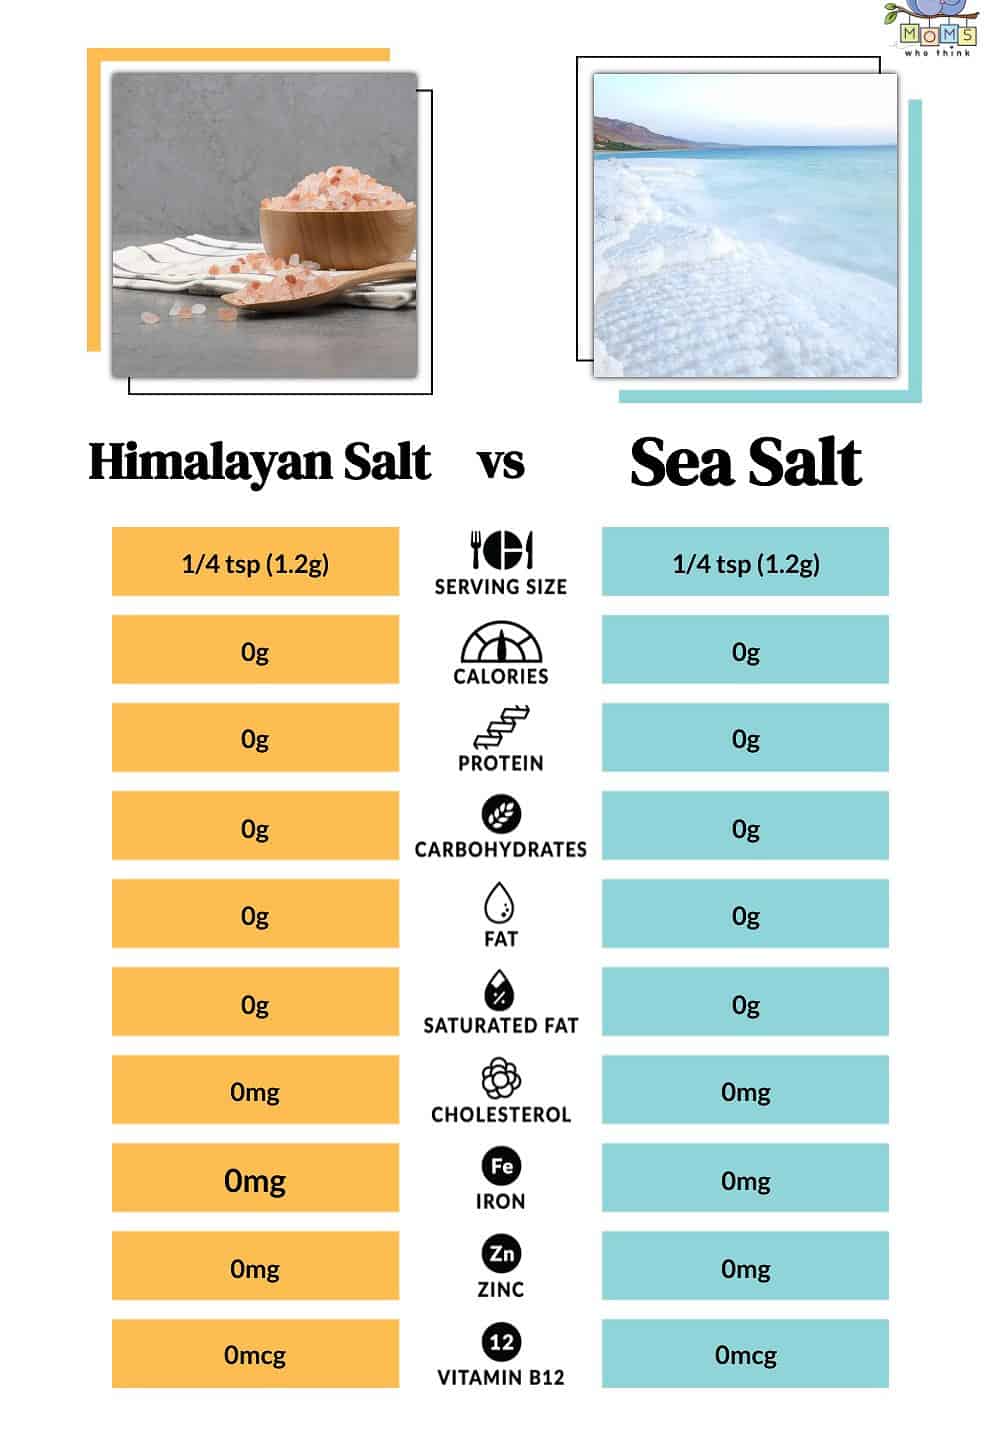 Himalayan Salt vs Sea Salt Nutritional Facts